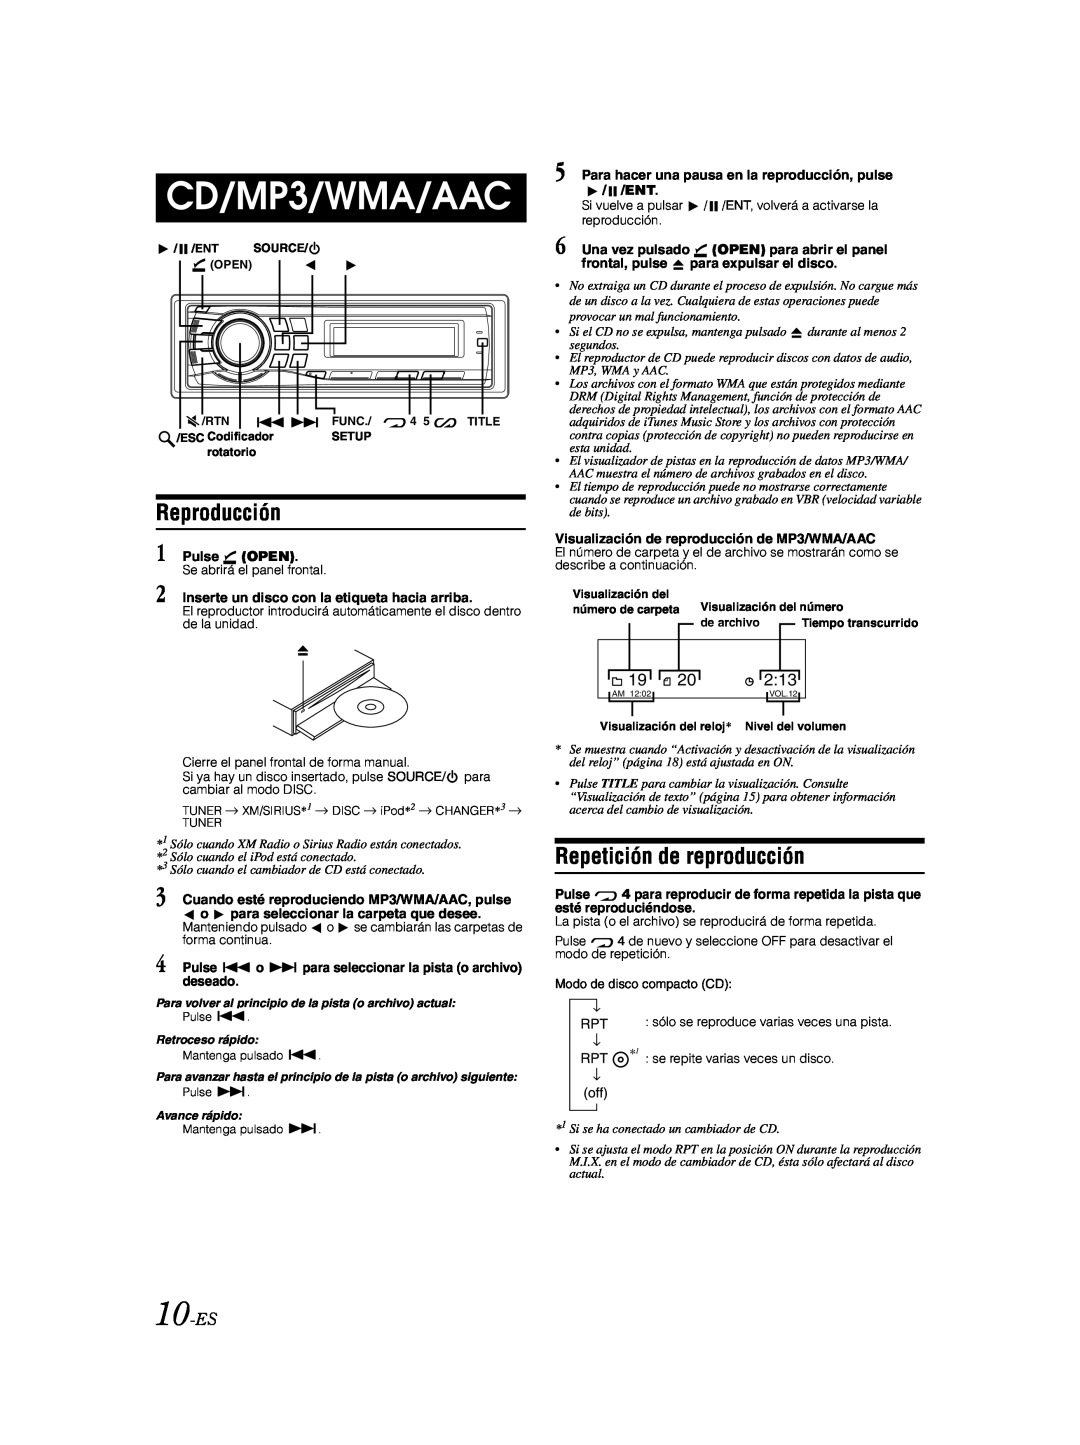 Alpine CDA-9885 owner manual Reproducción, Repetición de reproducción, CD/MP3/WMA/AAC, 2:13, 10-ES 